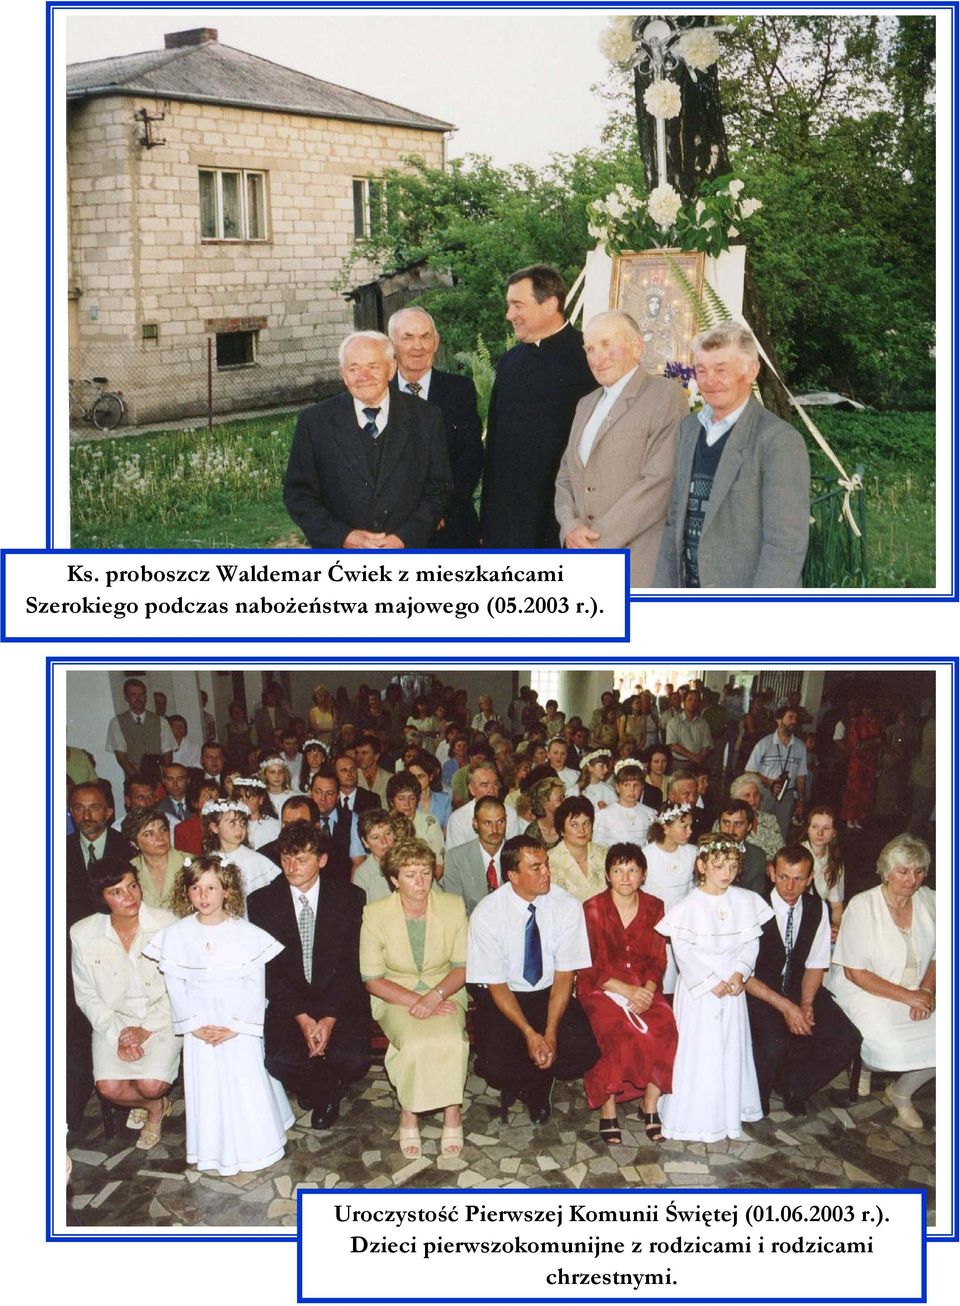 Uroczystość Pierwszej Komunii Świętej (01.06.2003 r.).